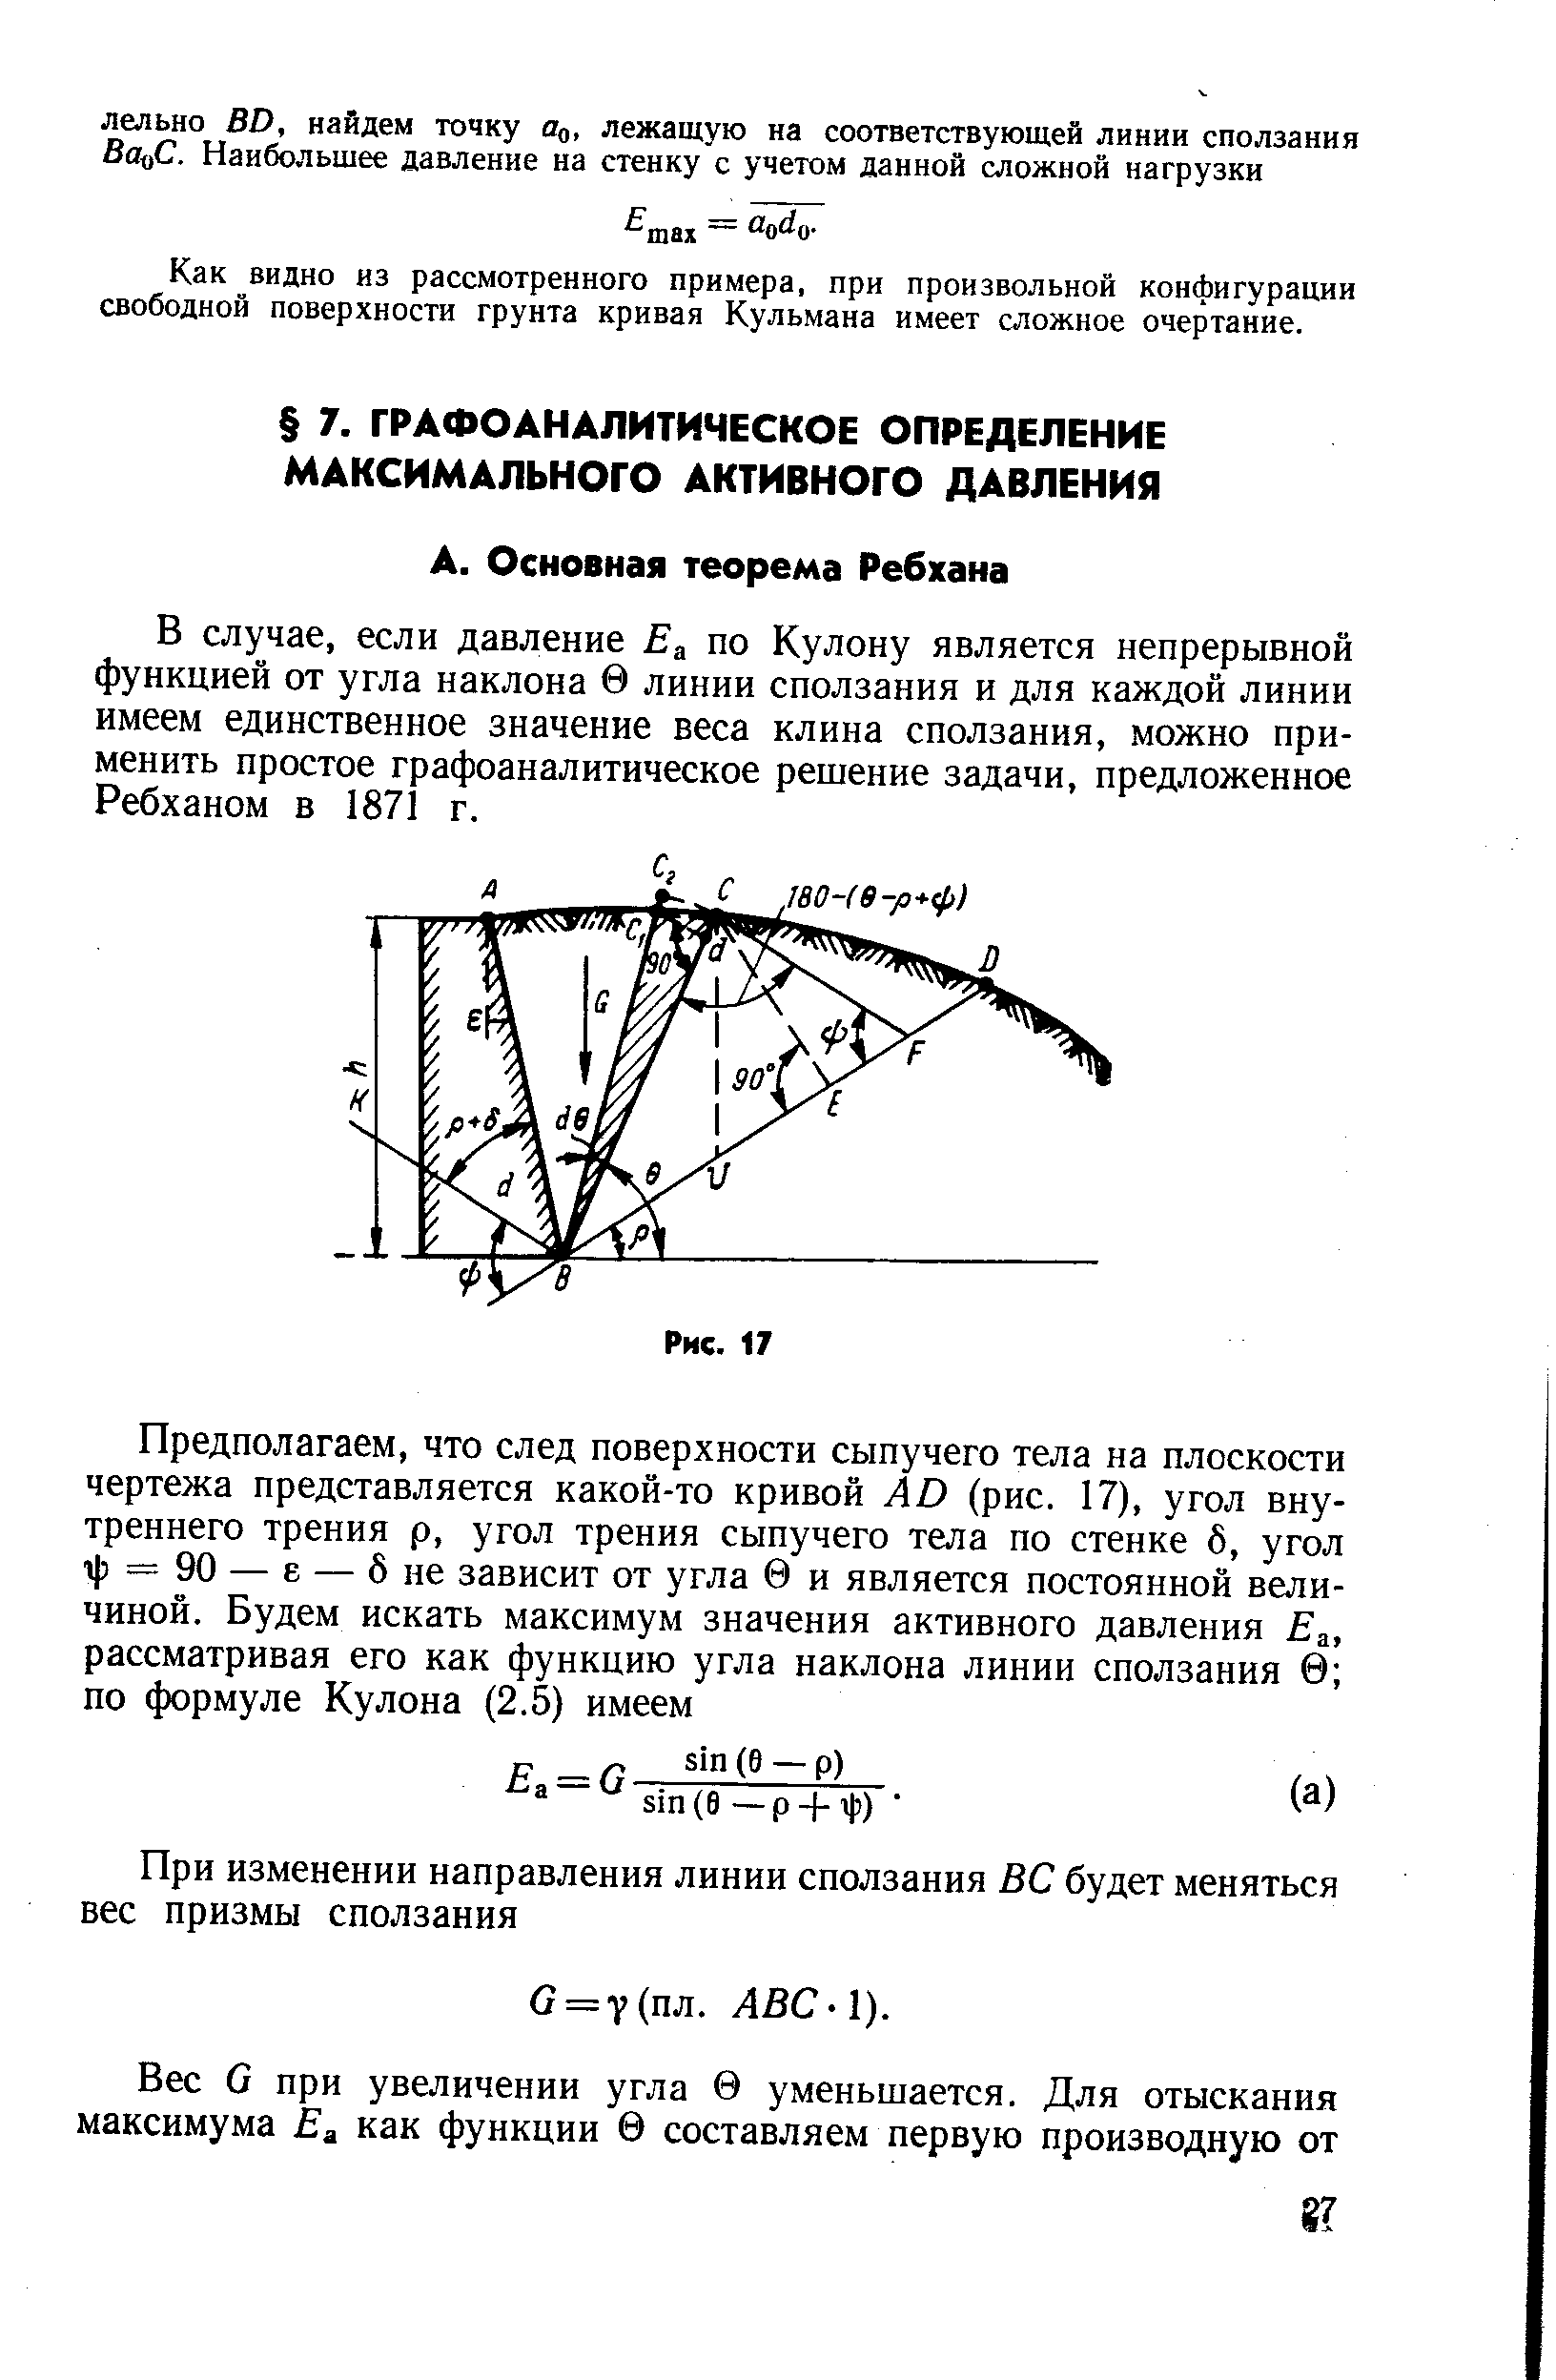 Как видно из рассмотренного примера, при произвольной конфигурации свободной поверхности грунта кривая Кульмана имеет сложное очертание.
